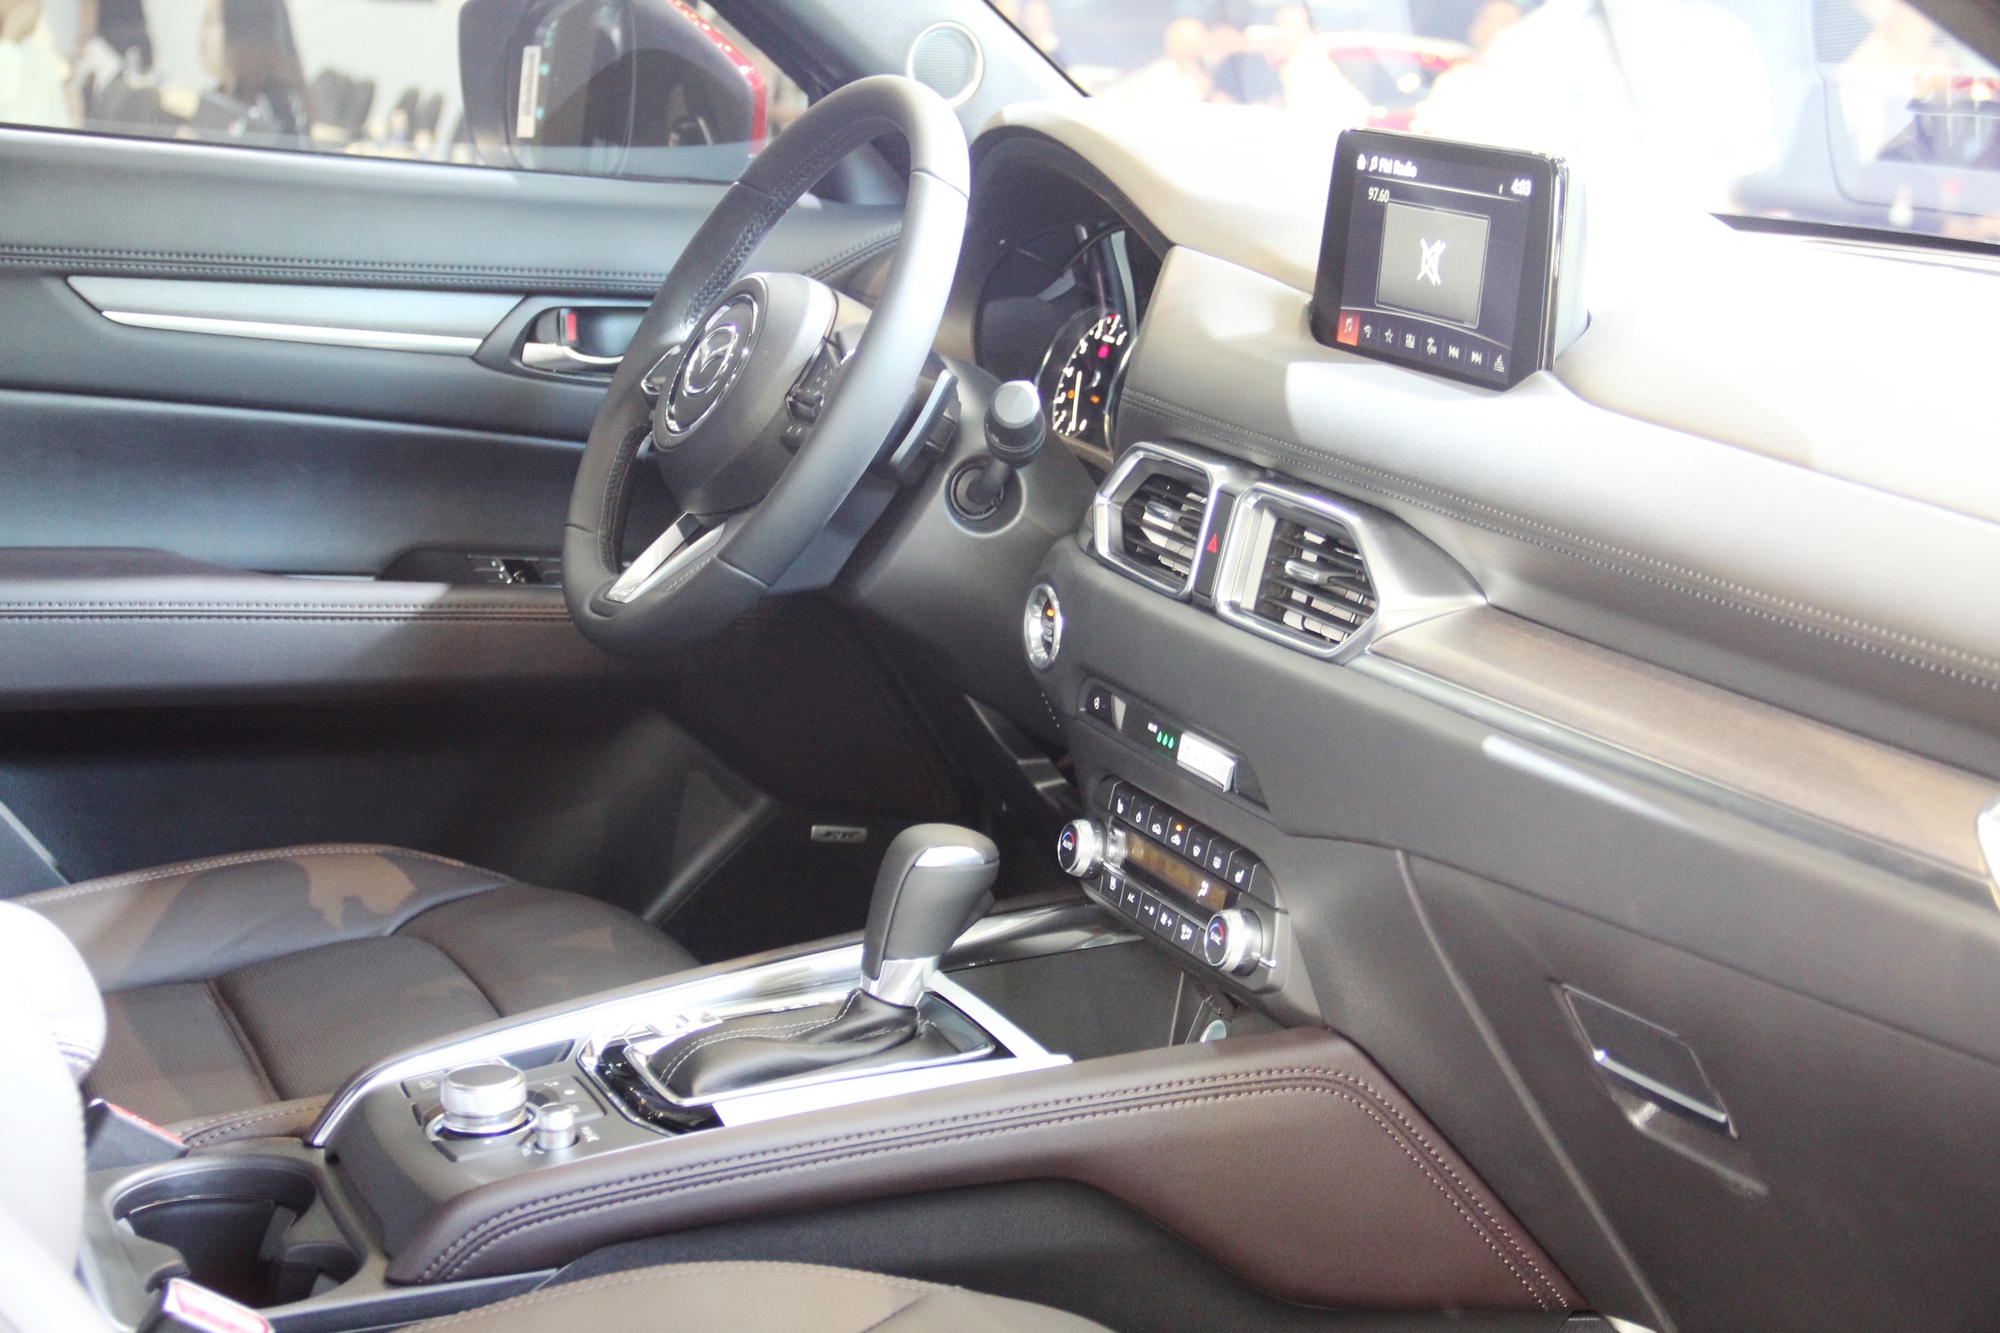 Thaco giới thiệu mẫu xe New Mazda CX5 với nhiều tính năng thông minh